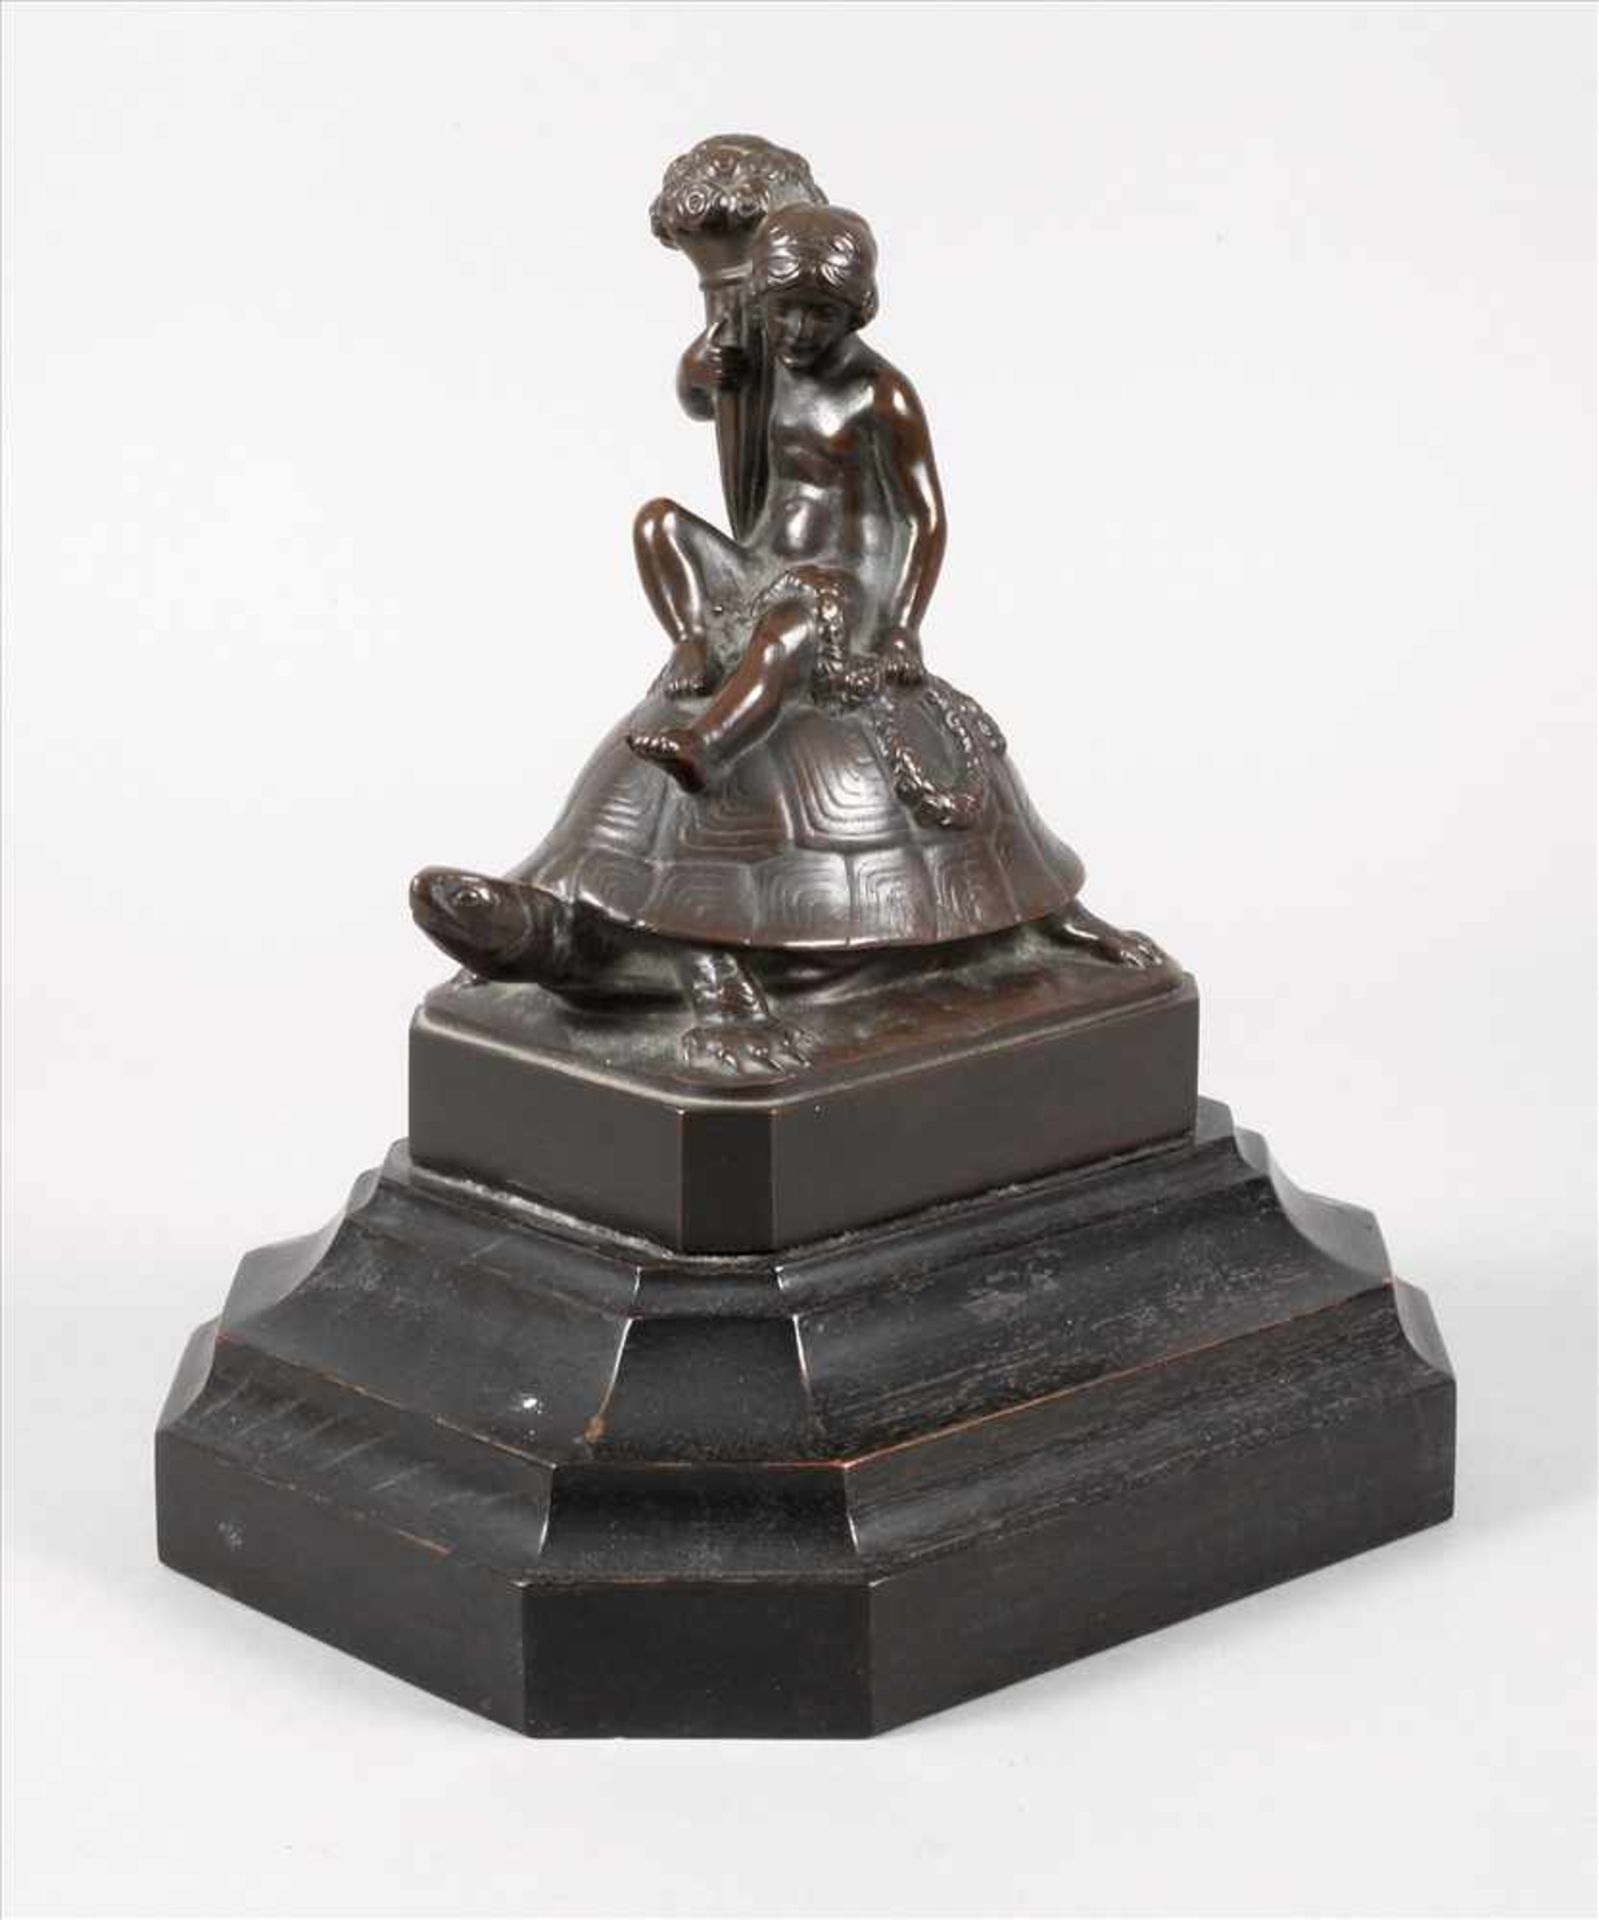 C. Bull, Mädchen auf Schildkröteum 1900, signiert, Gießerstempel Bildgießerei Lauchhammer, Bronze